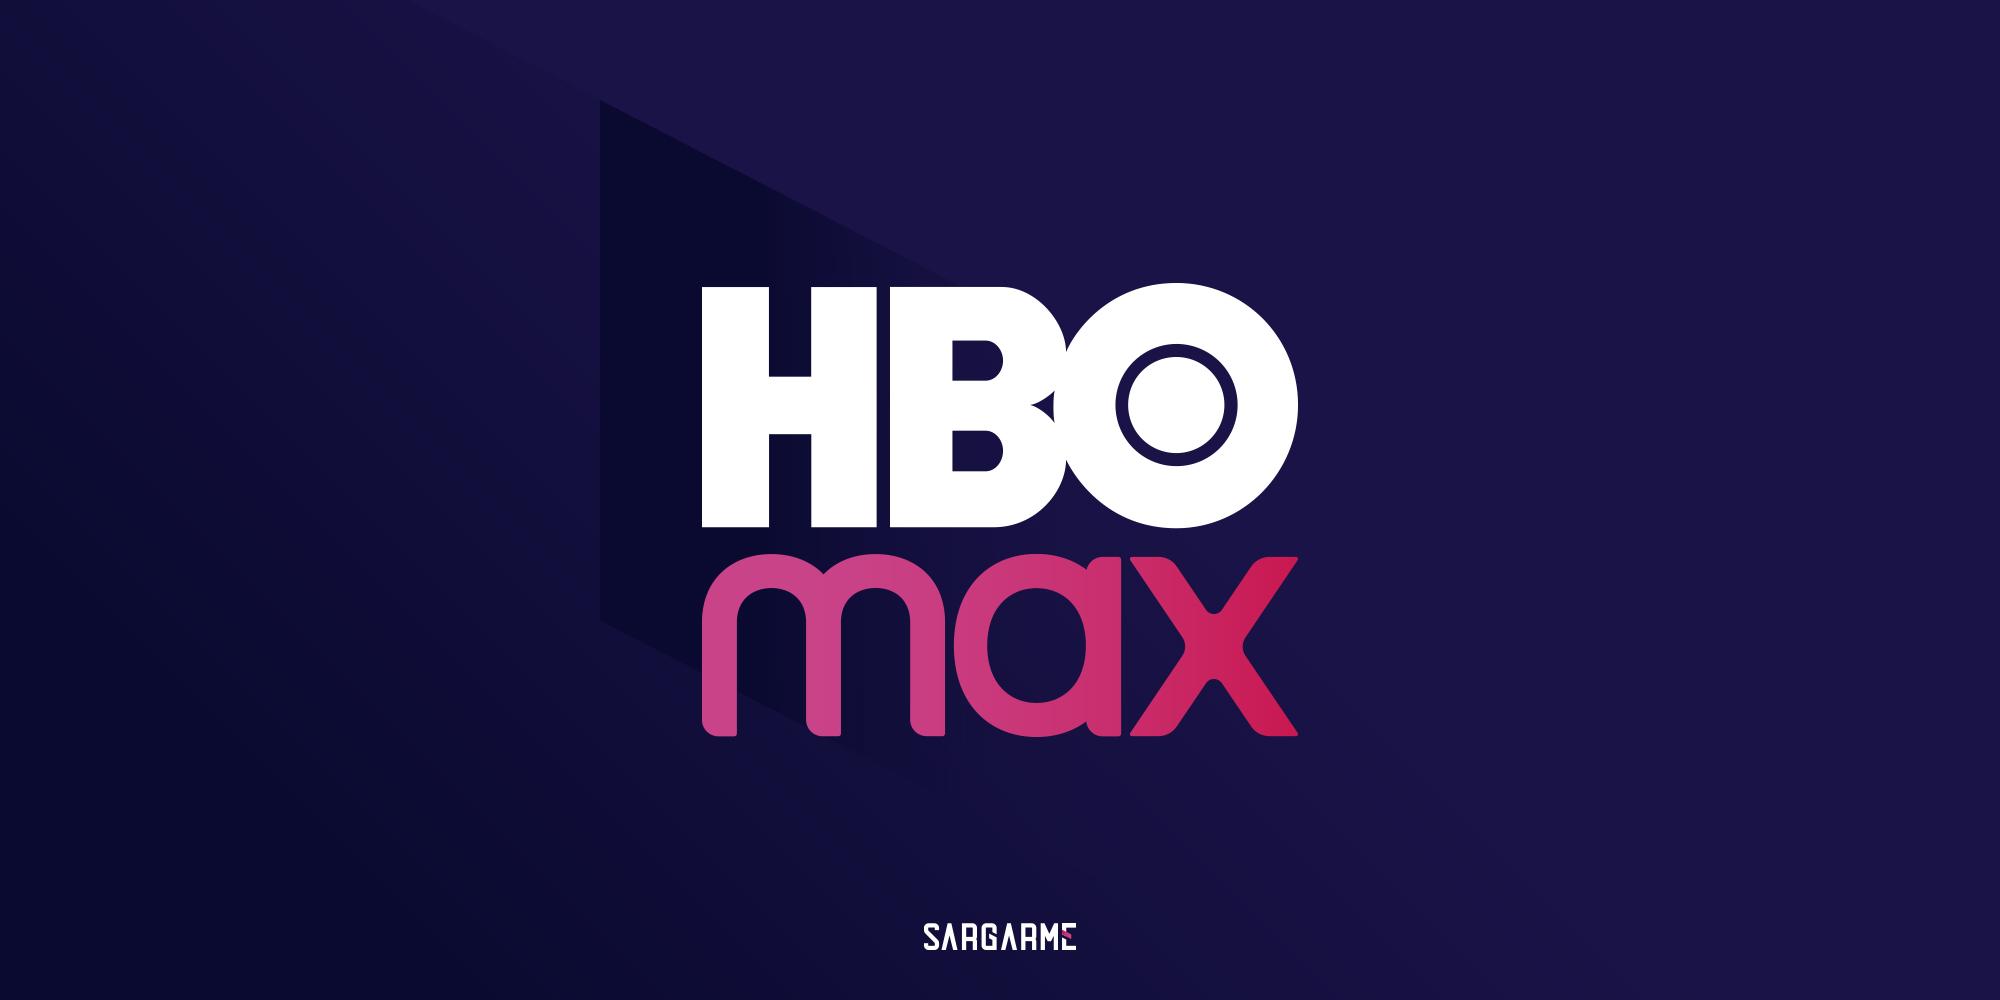 سرویس HBO Max چیست